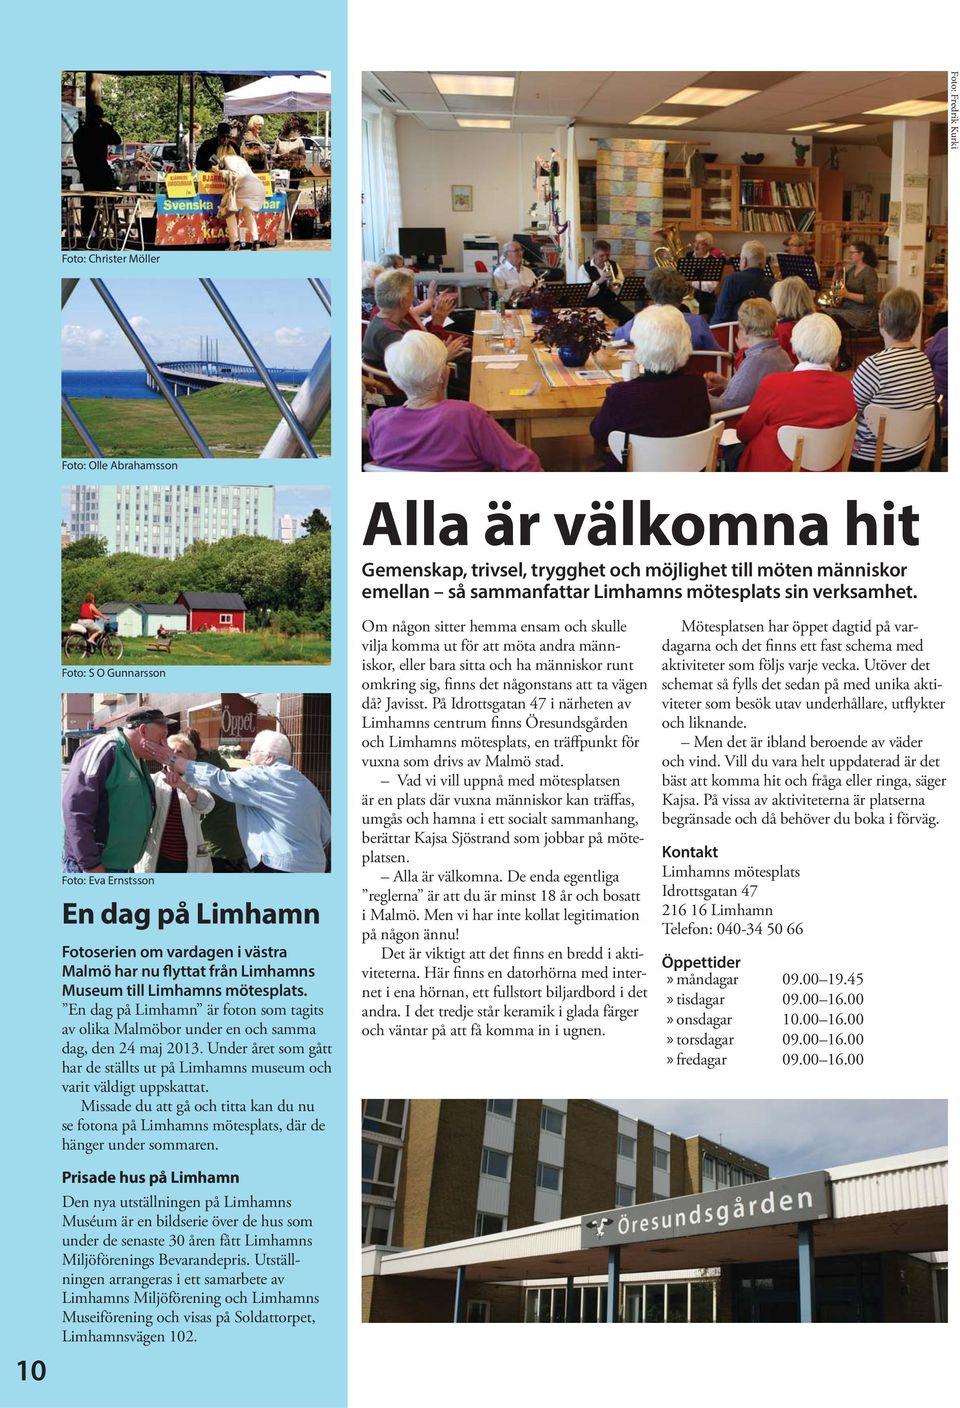 En dag på Limhamn är foton som tagits av olika Malmöbor under en och samma dag, den 24 maj 2013. Under året som gått har de ställts ut på Limhamns museum och varit väldigt uppskattat.